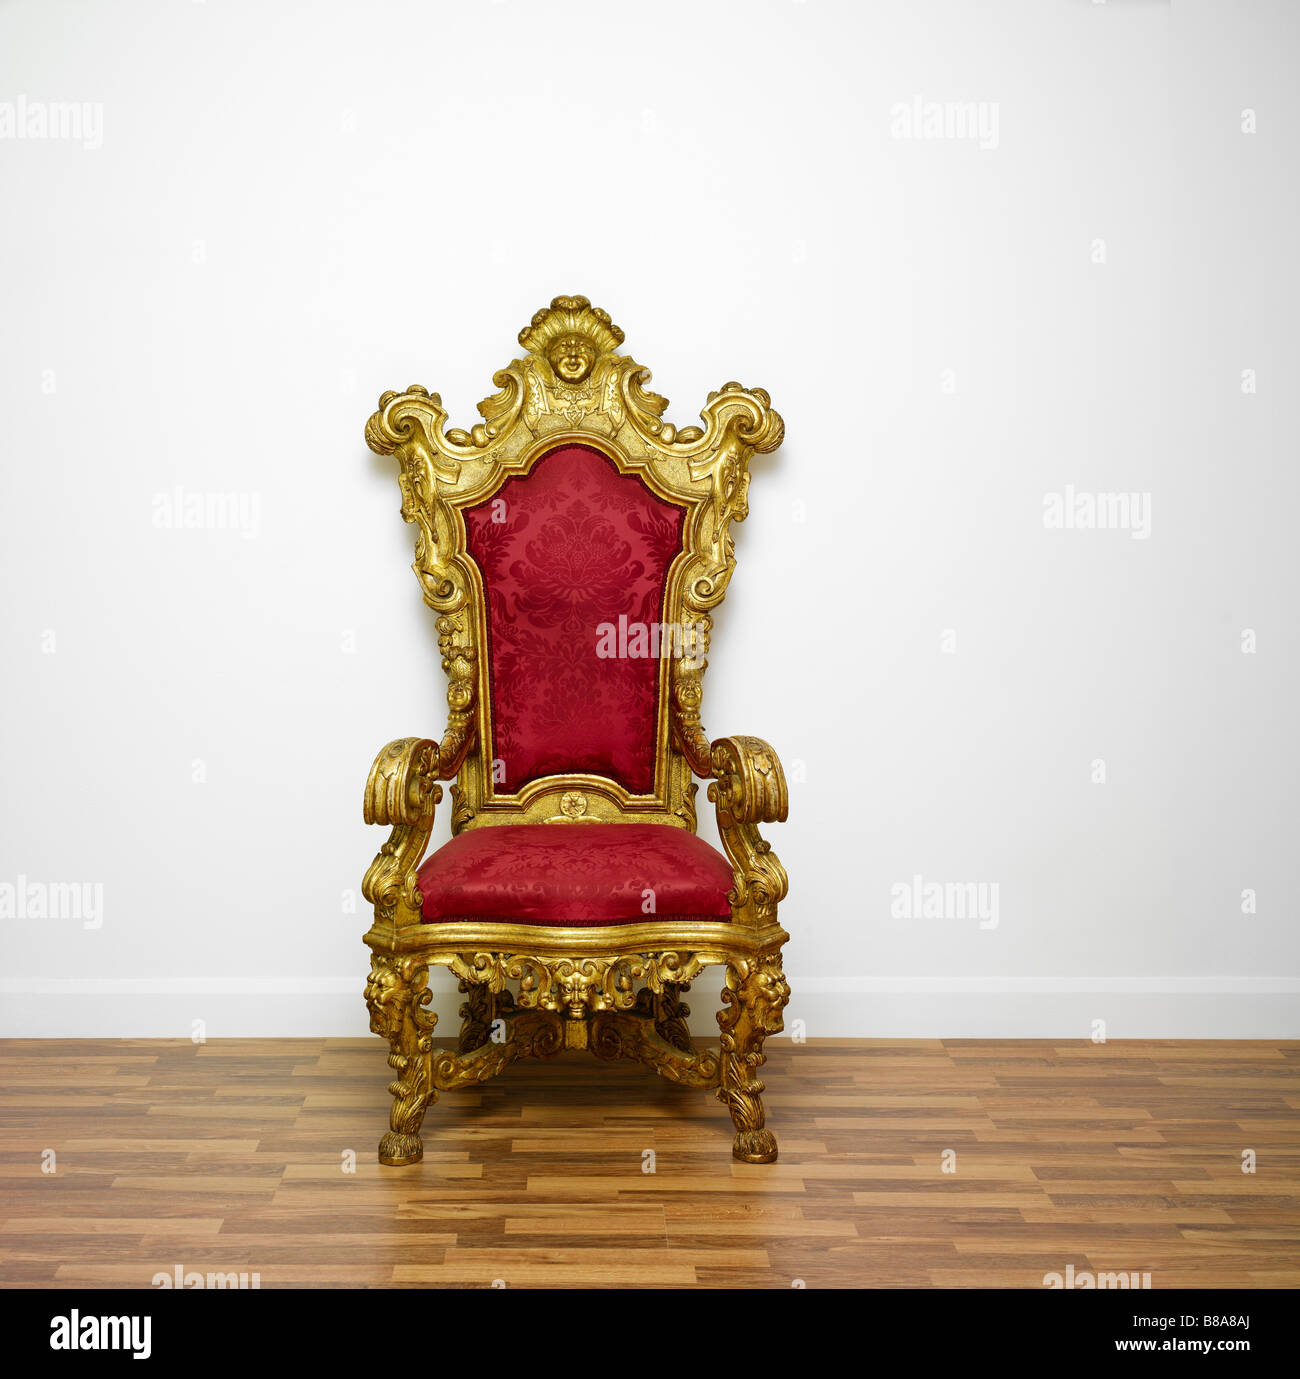 Un fauteuil rouge et or trône sur un fond blanc Photo Stock - Alamy